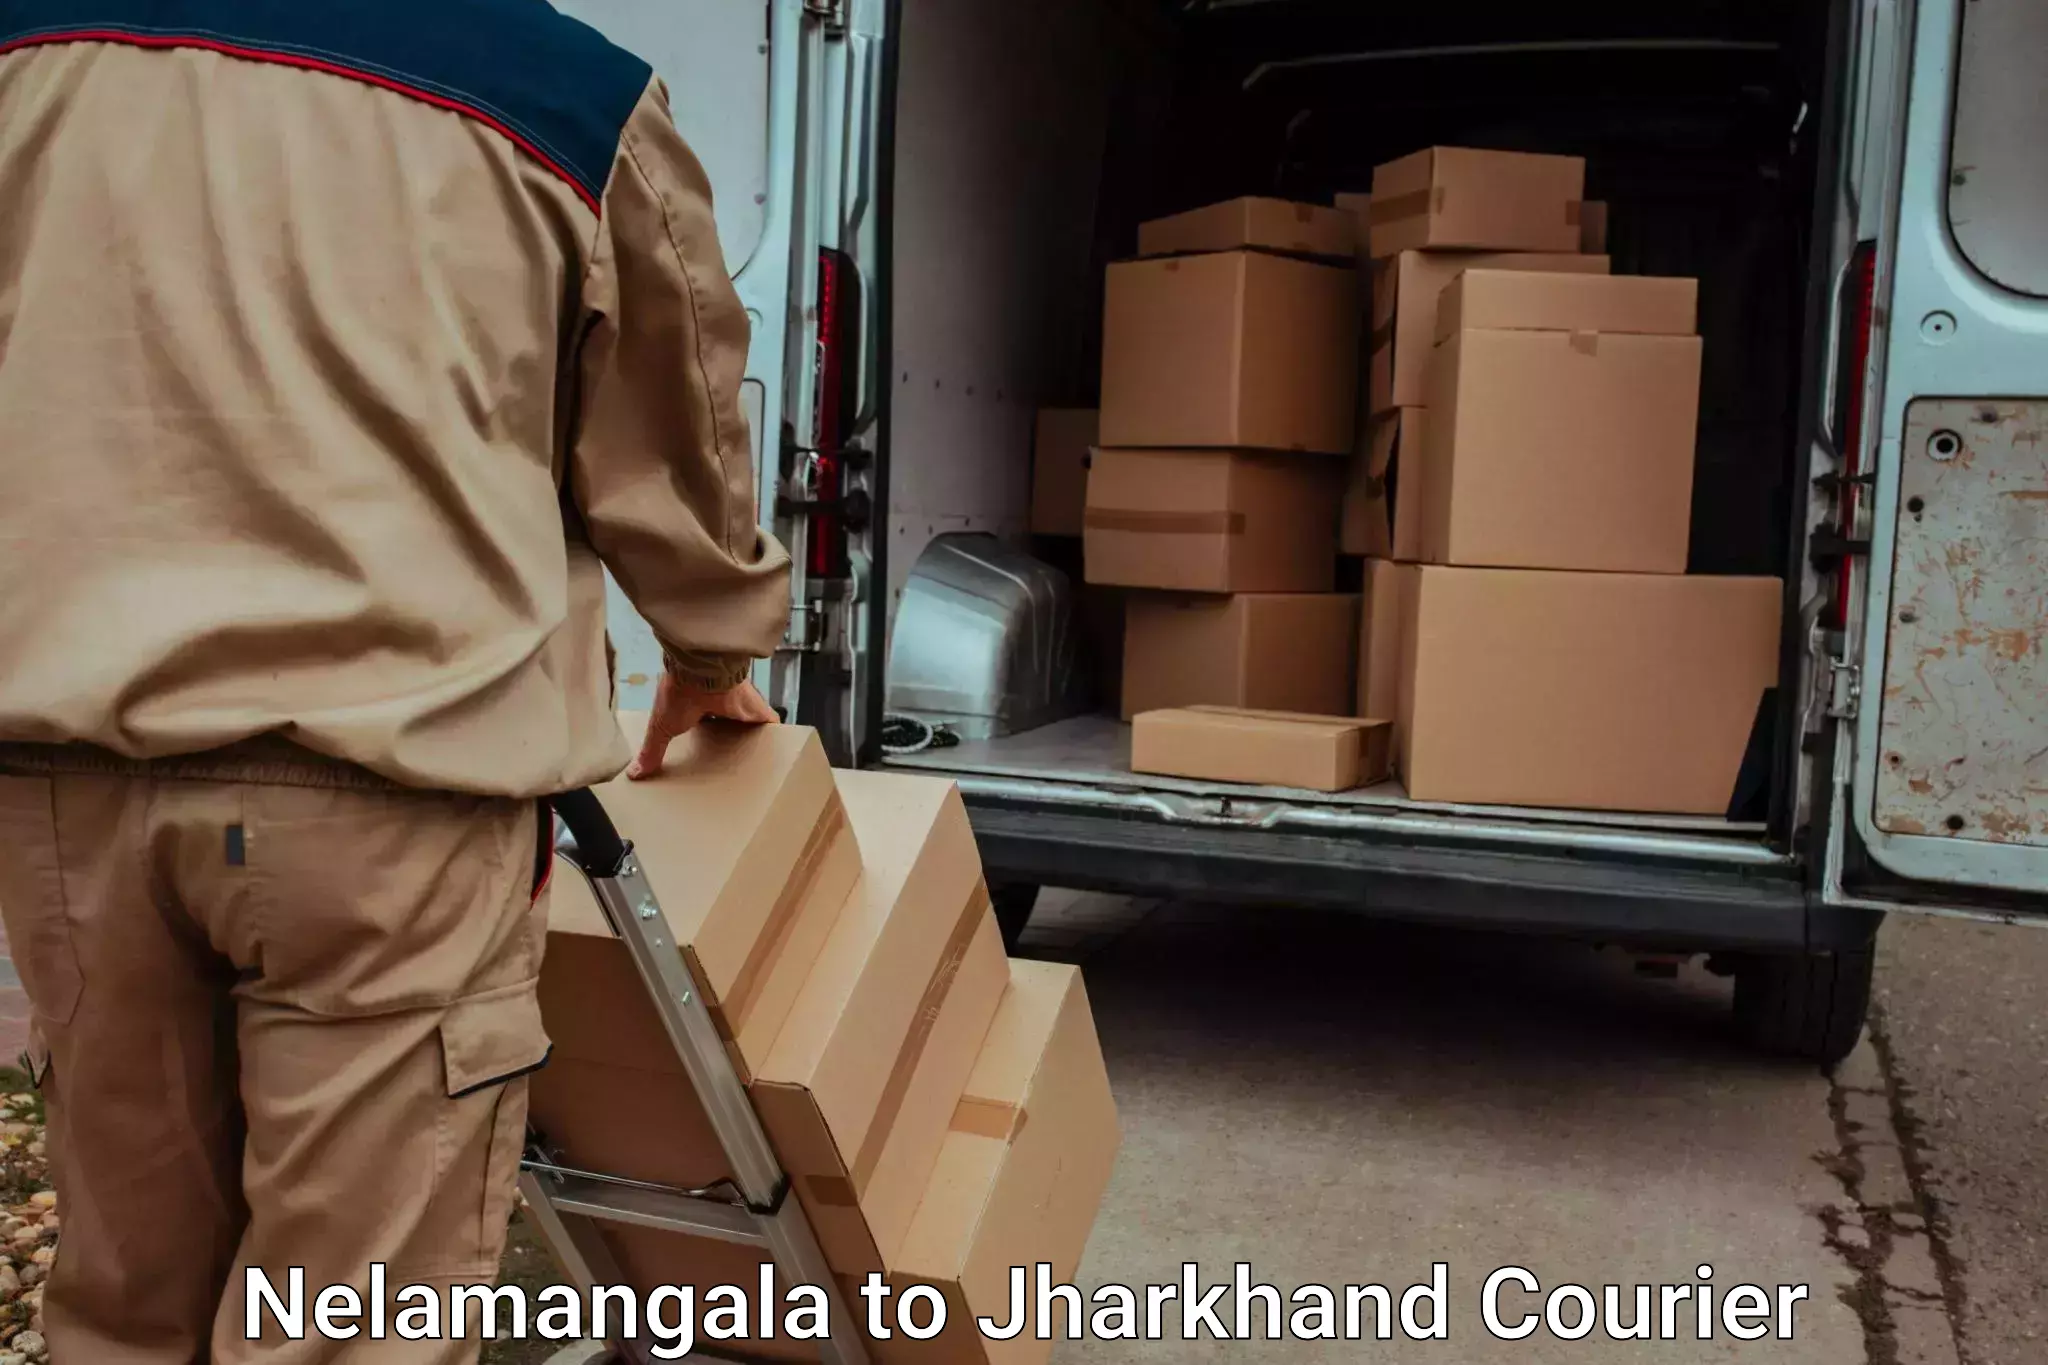 Luggage delivery providers Nelamangala to IIIT Ranchi